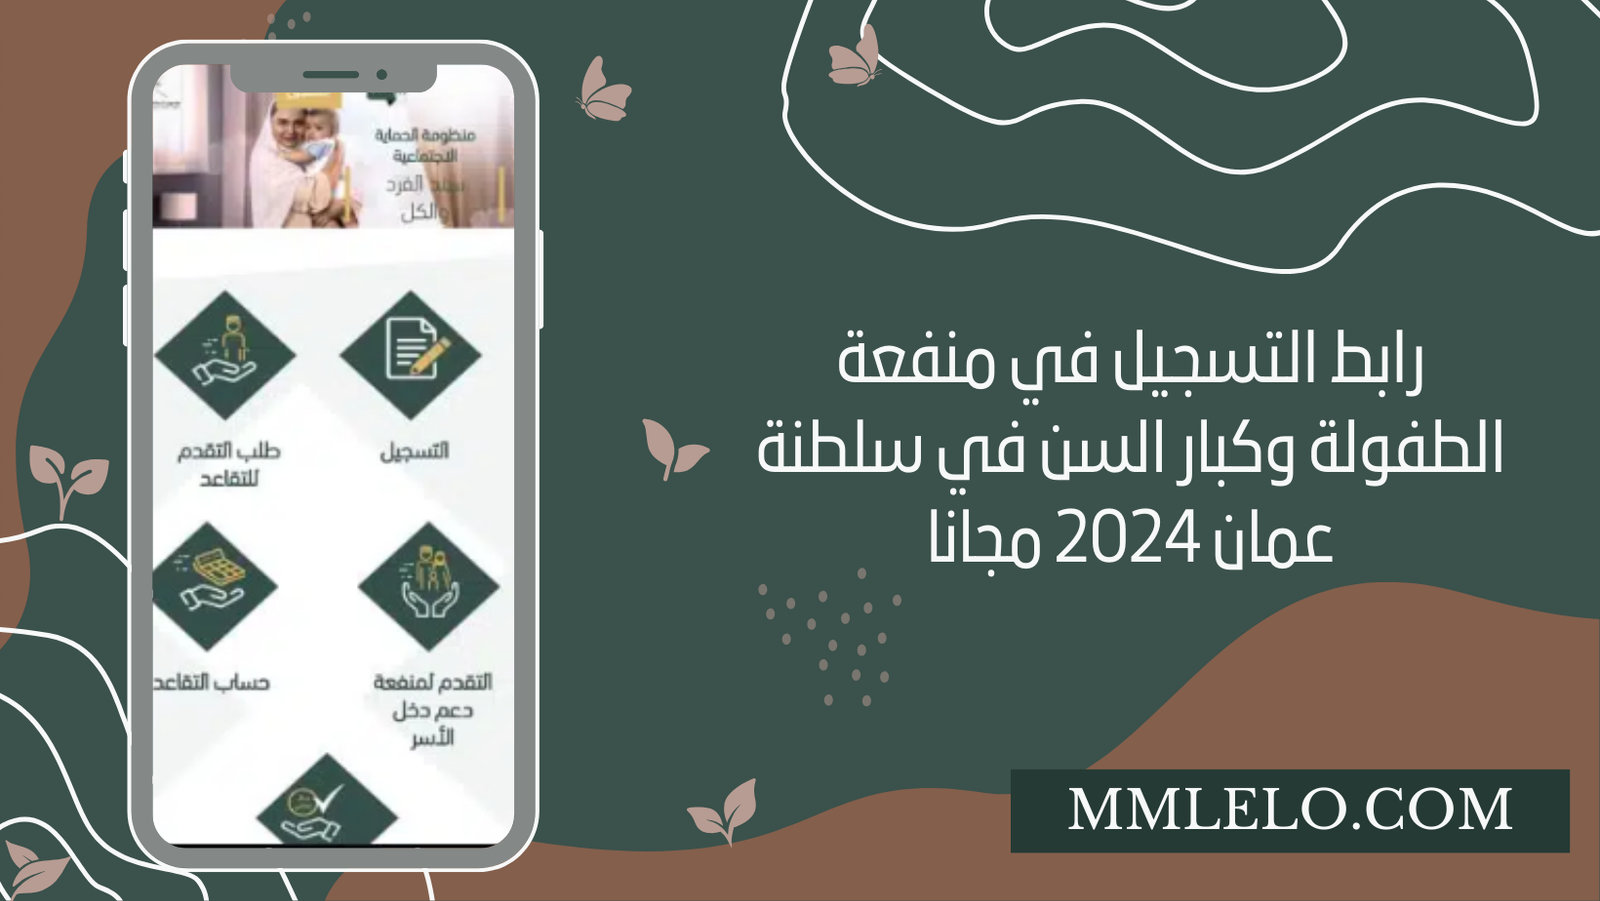 رابط التسجيل في منفعة الطفولة وكبار السن في سلطنة عمان 2024 مجانا